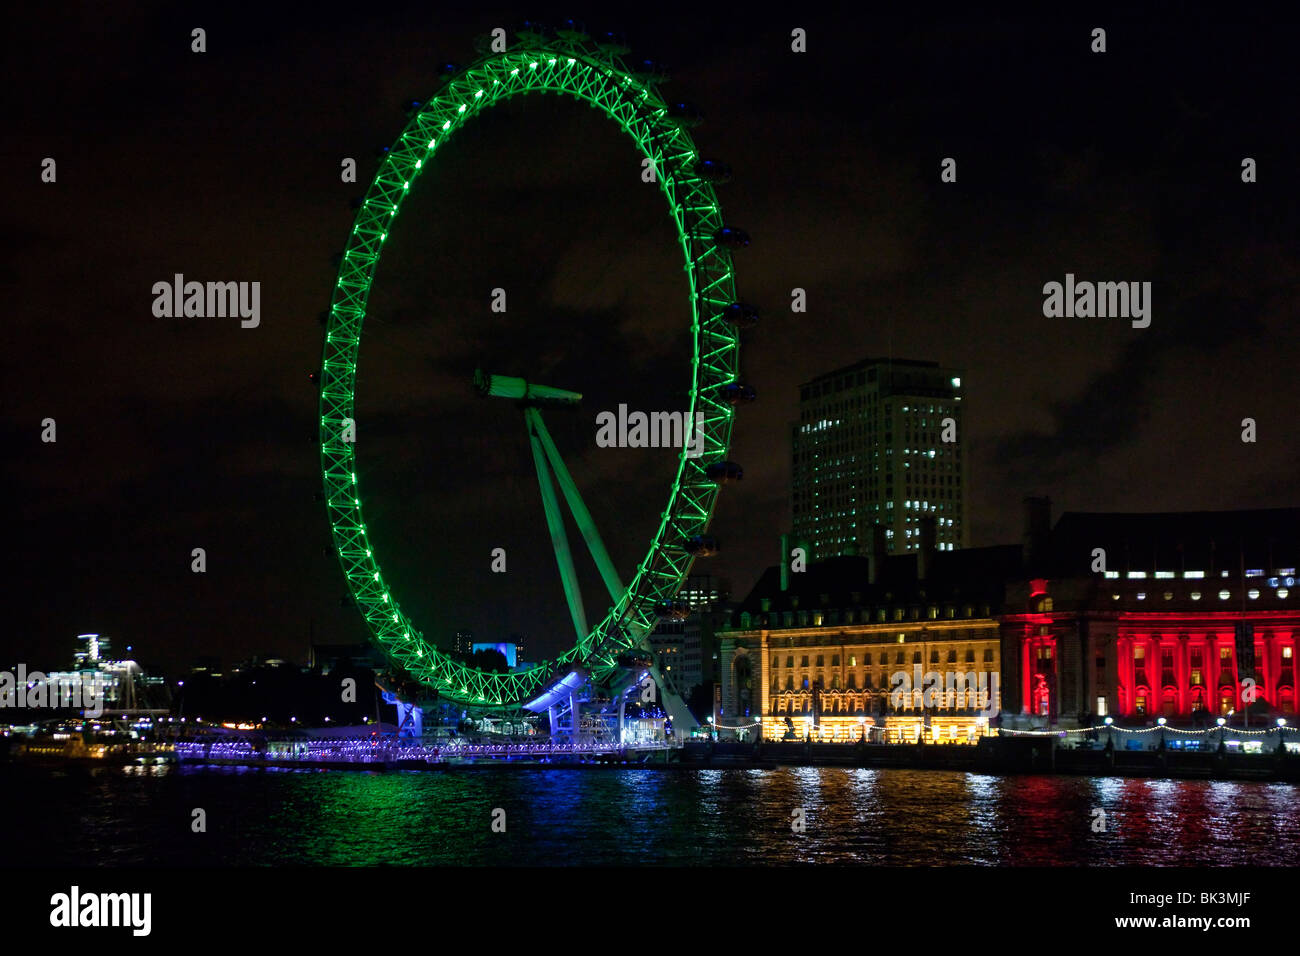 London Eye by night, UK Stock Photo